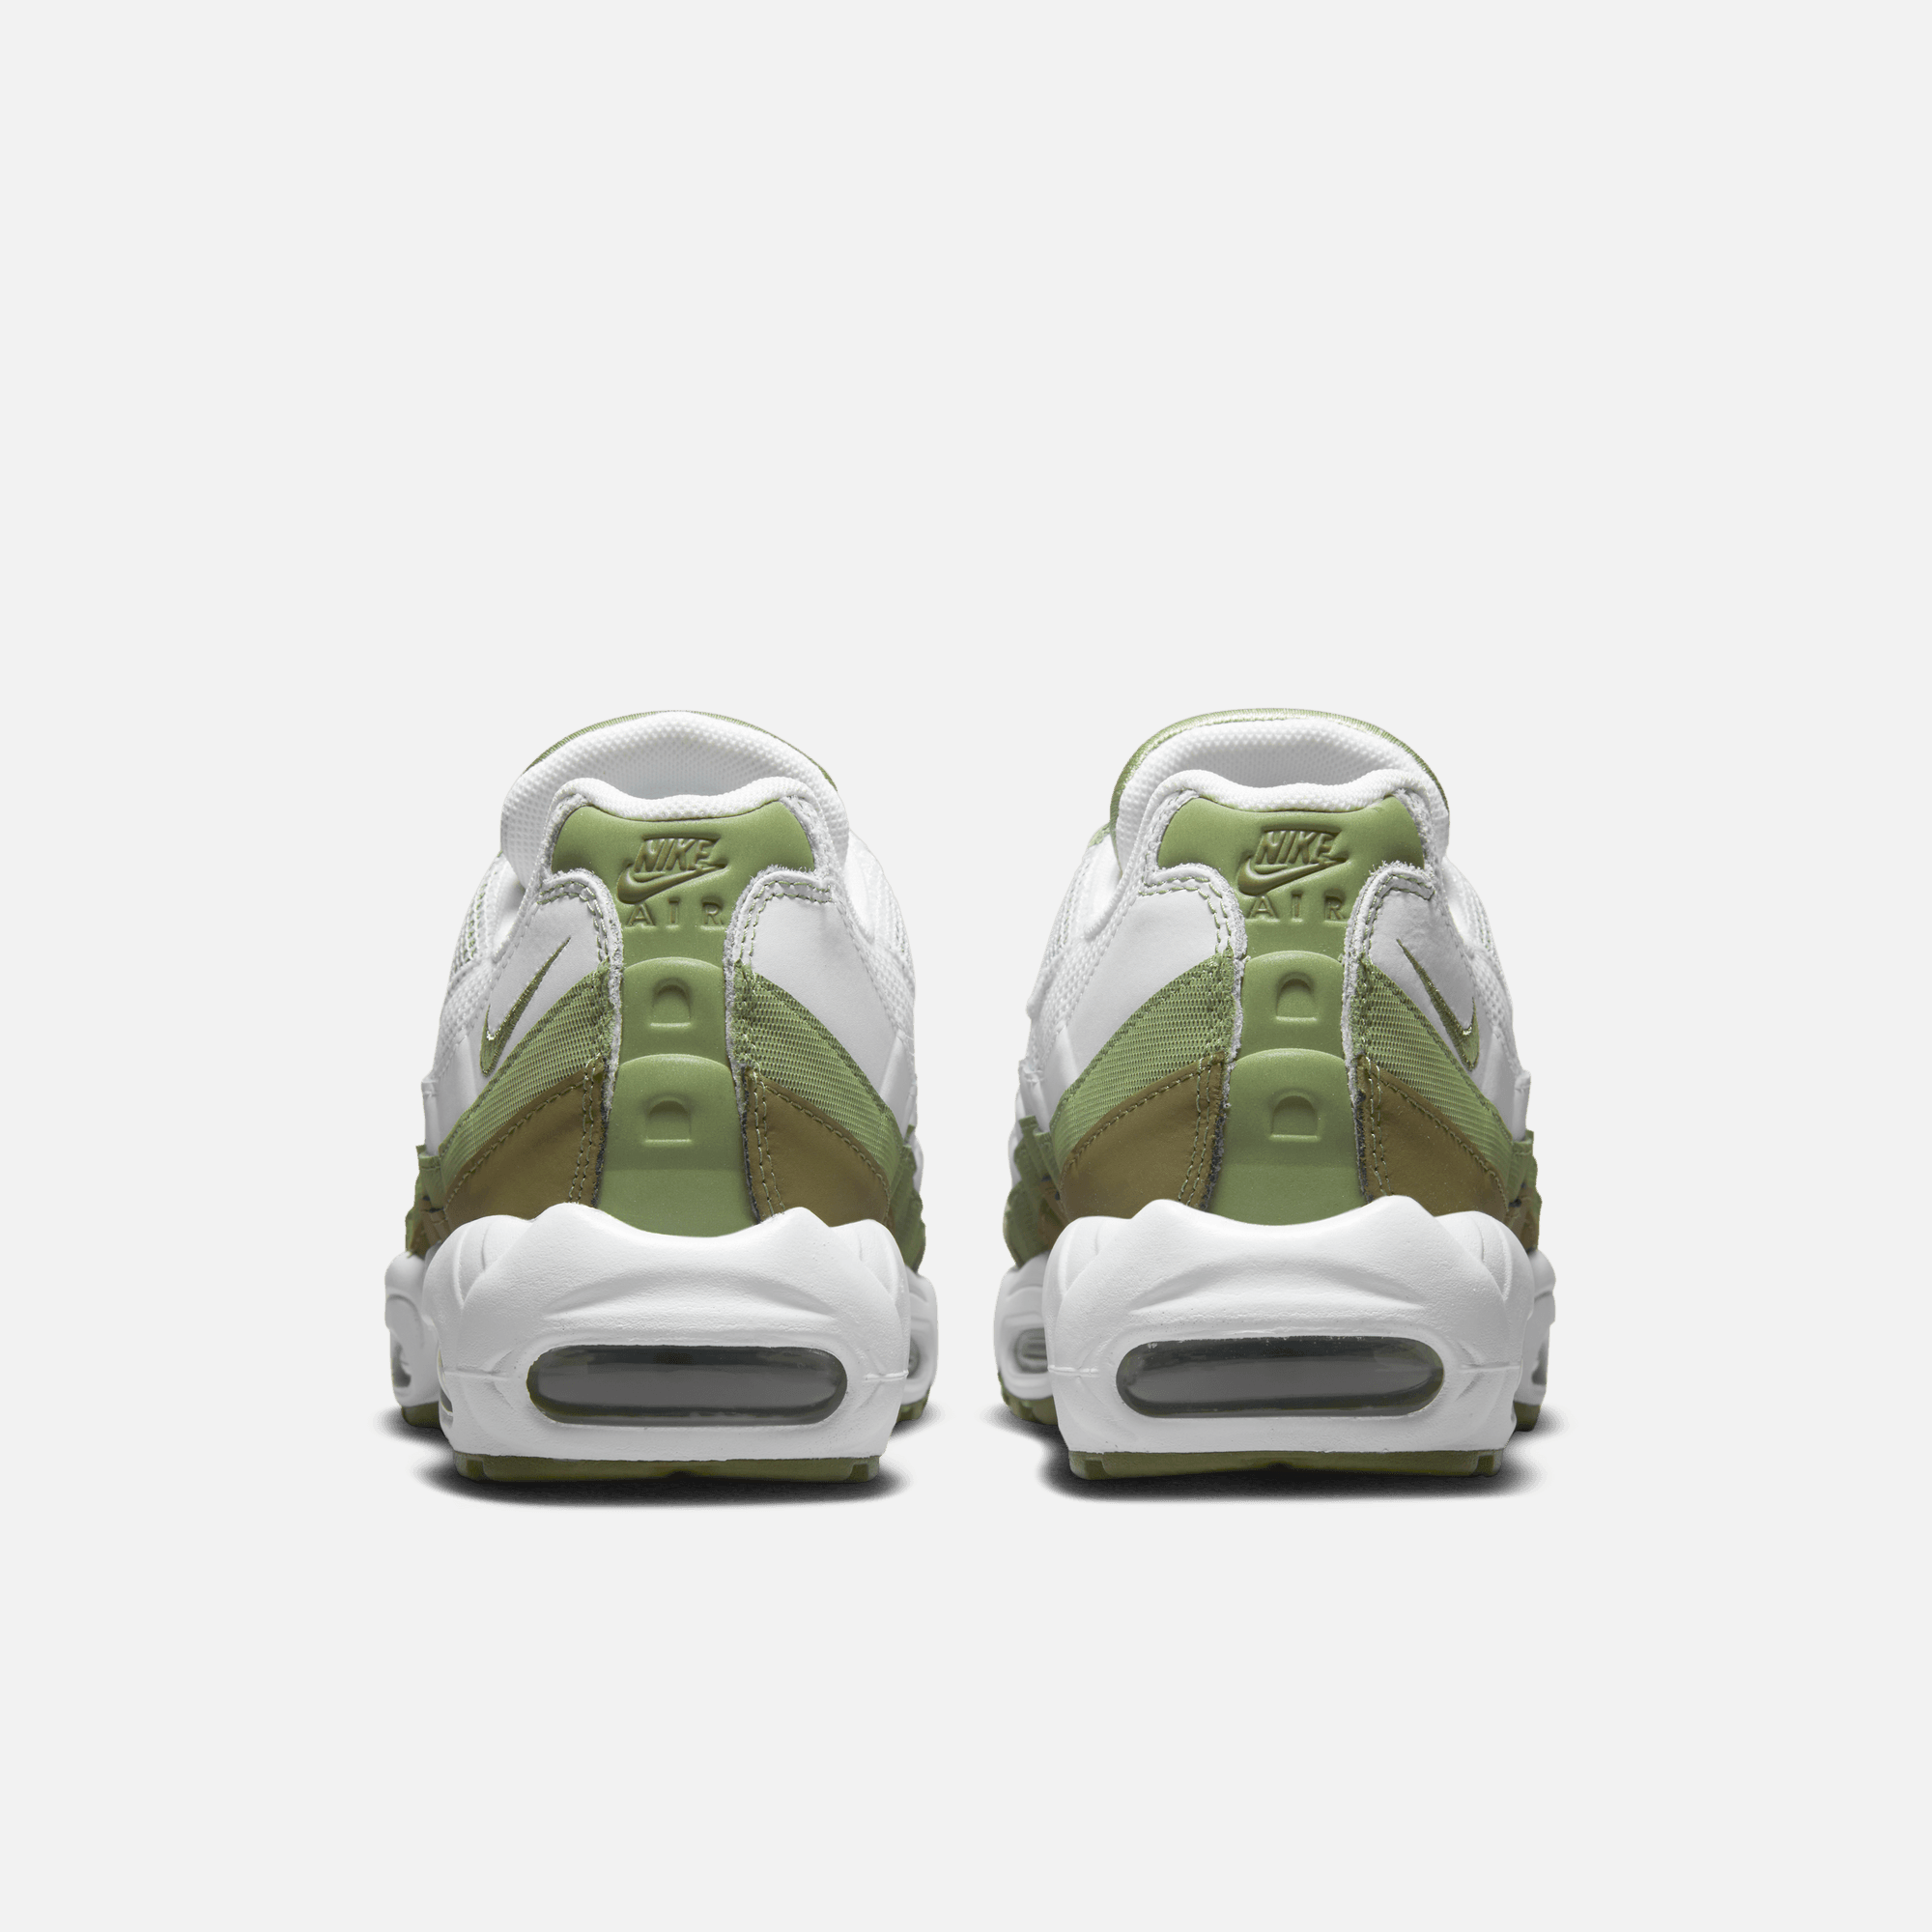 Nike Air Max 95 Oil Green